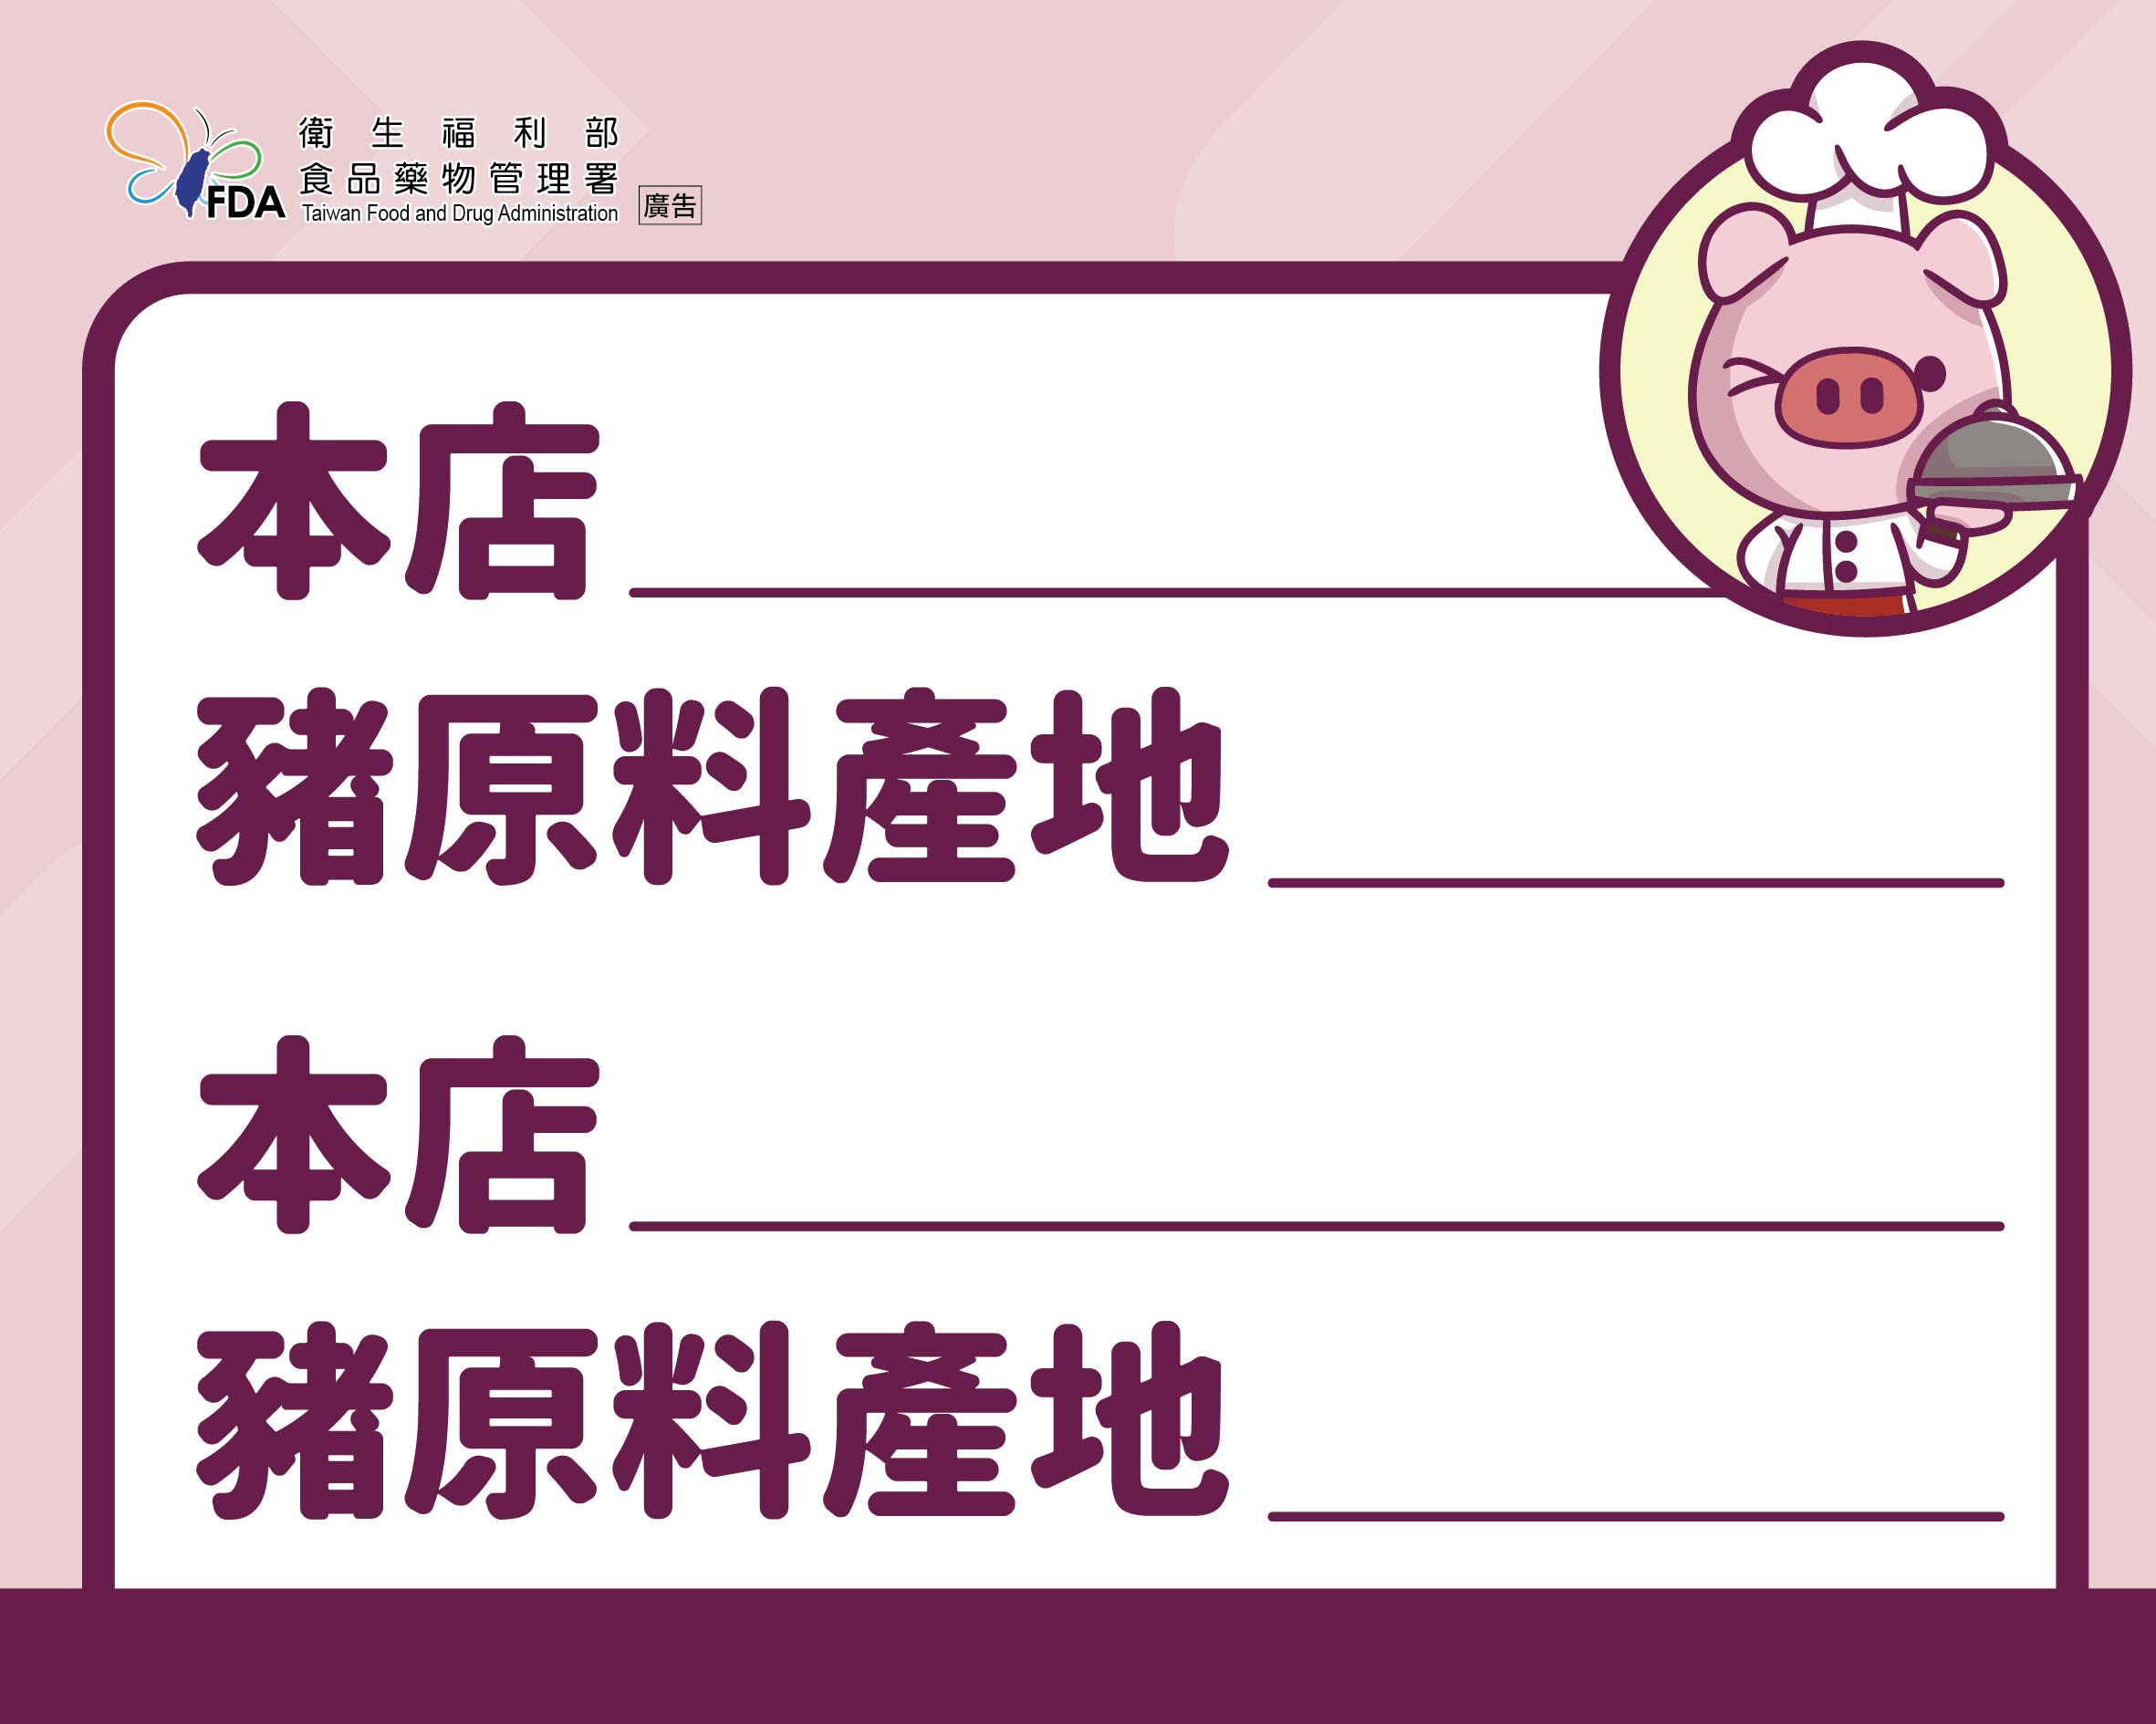 豬肉原料原產地標示規定宣導-標籤7(新)